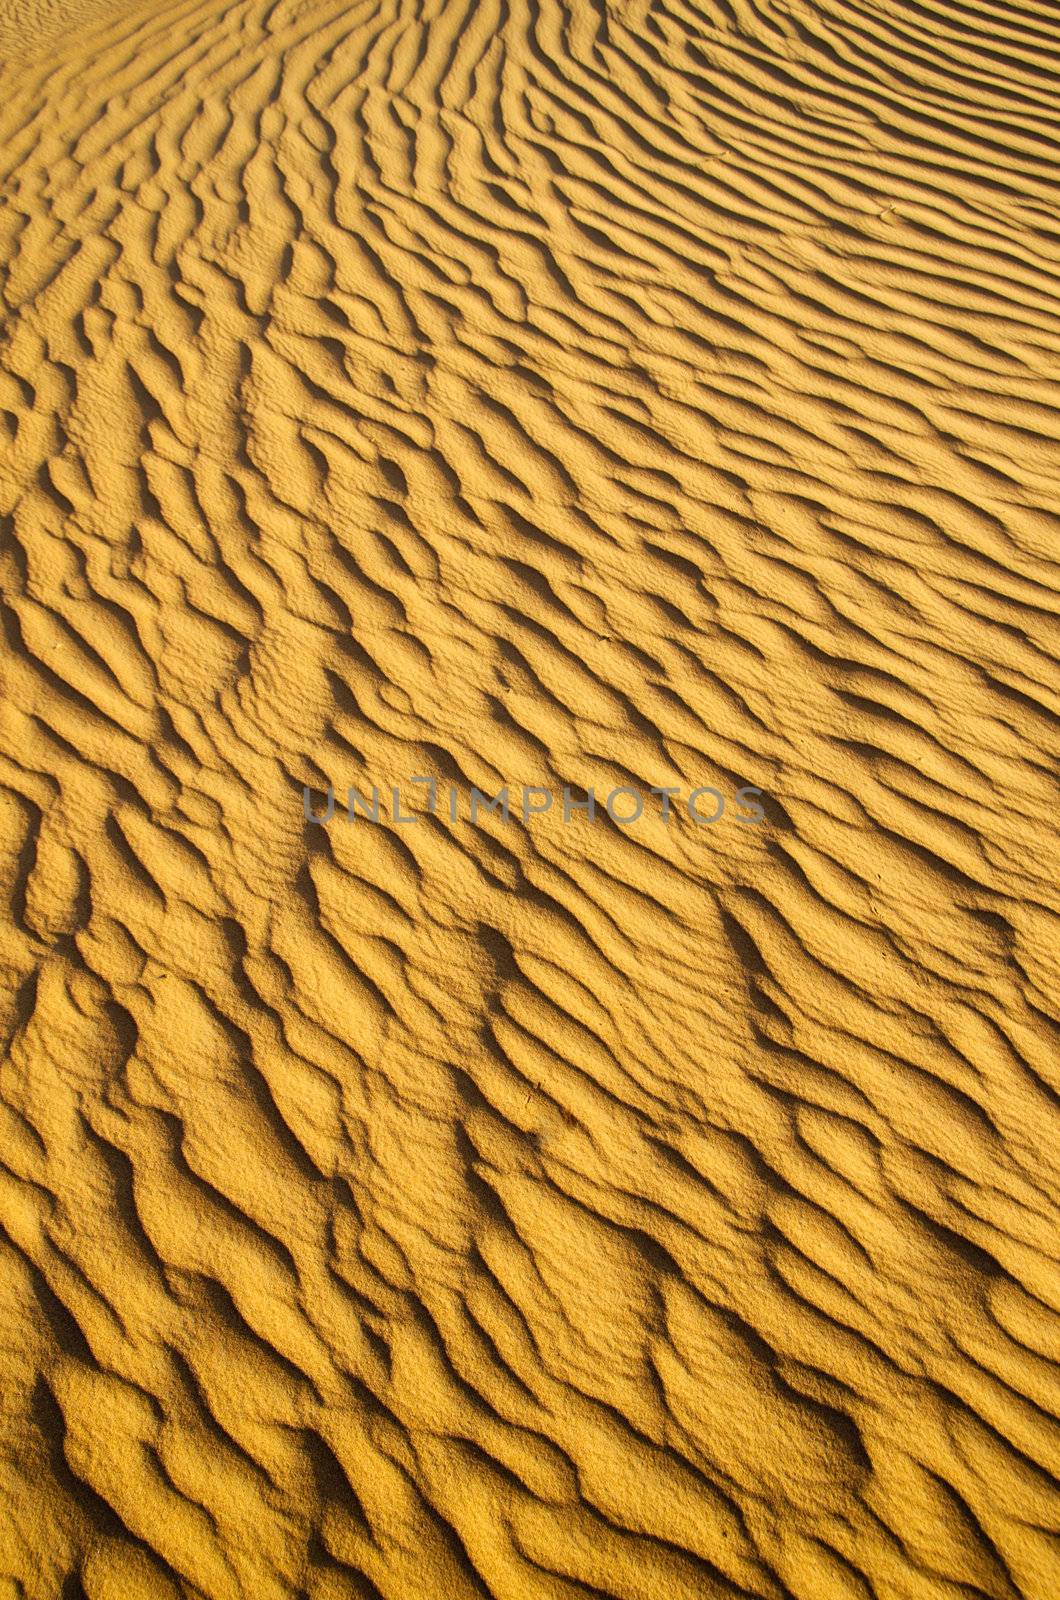 sand texture  by Pakhnyushchyy